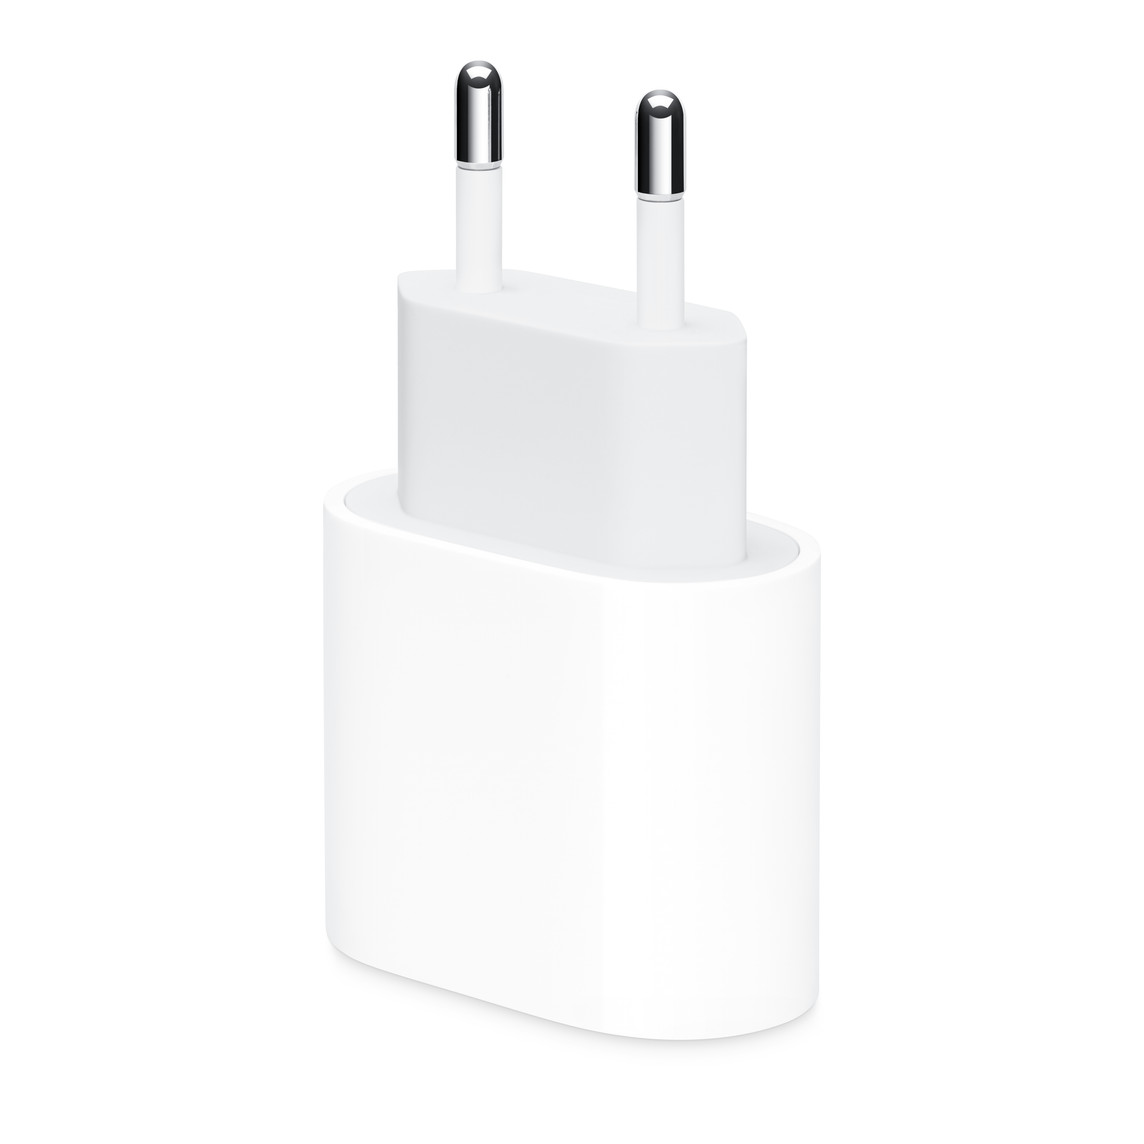 El adaptador de corriente USB-C de 20 vatios de Apple (con enchufe tipo C) es muy rápido y eficiente, así que va de perlas para cargar tus dispositivos en cualquier lugar.